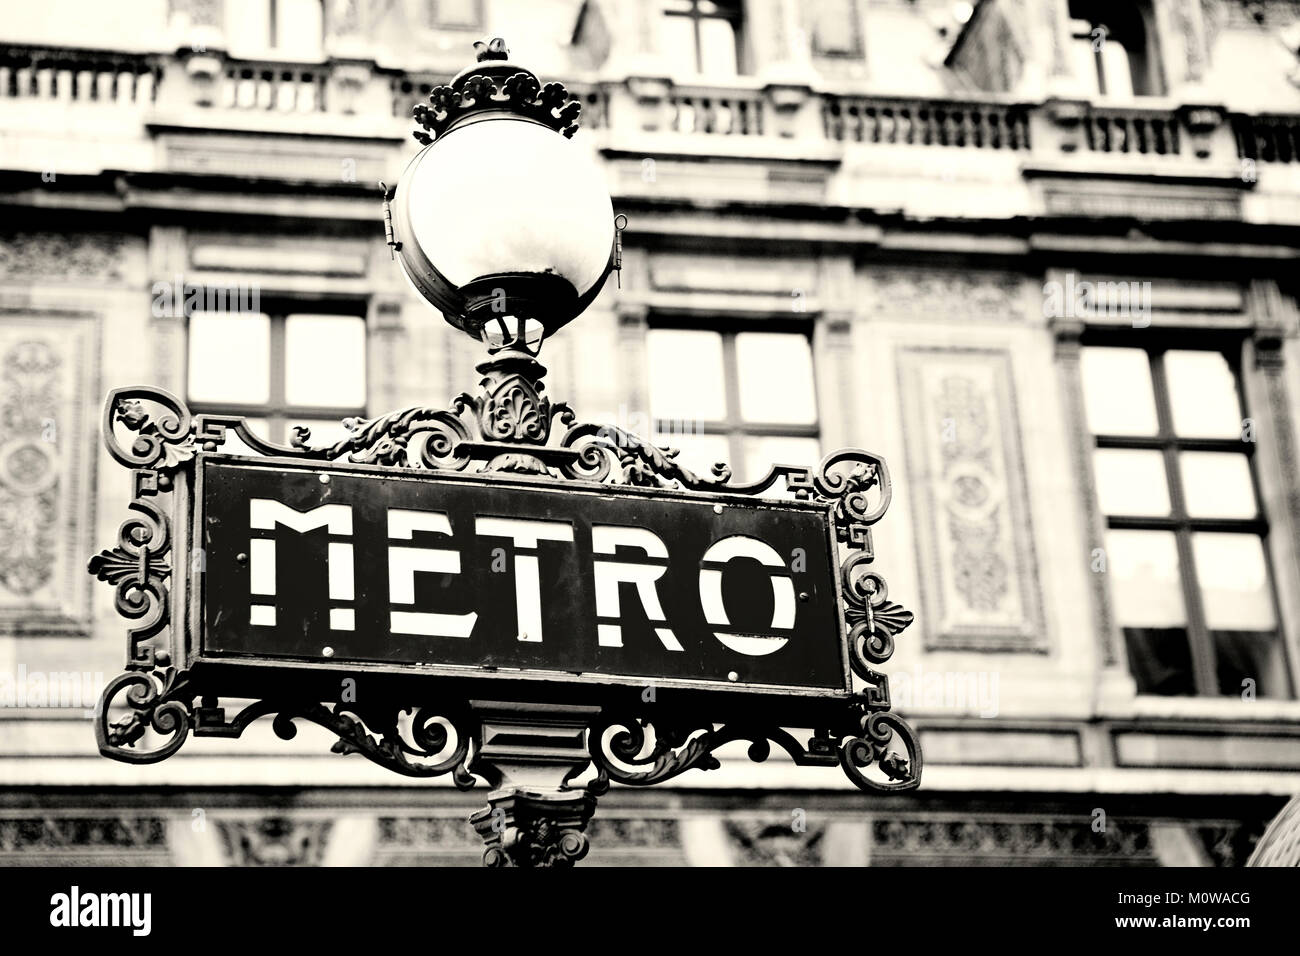 Panneau d'entrée du métro Art Nouveau Paris sur fond magnifique, style vintage. Gros plan, mise au point sélective. Décembre 2011. Banque D'Images